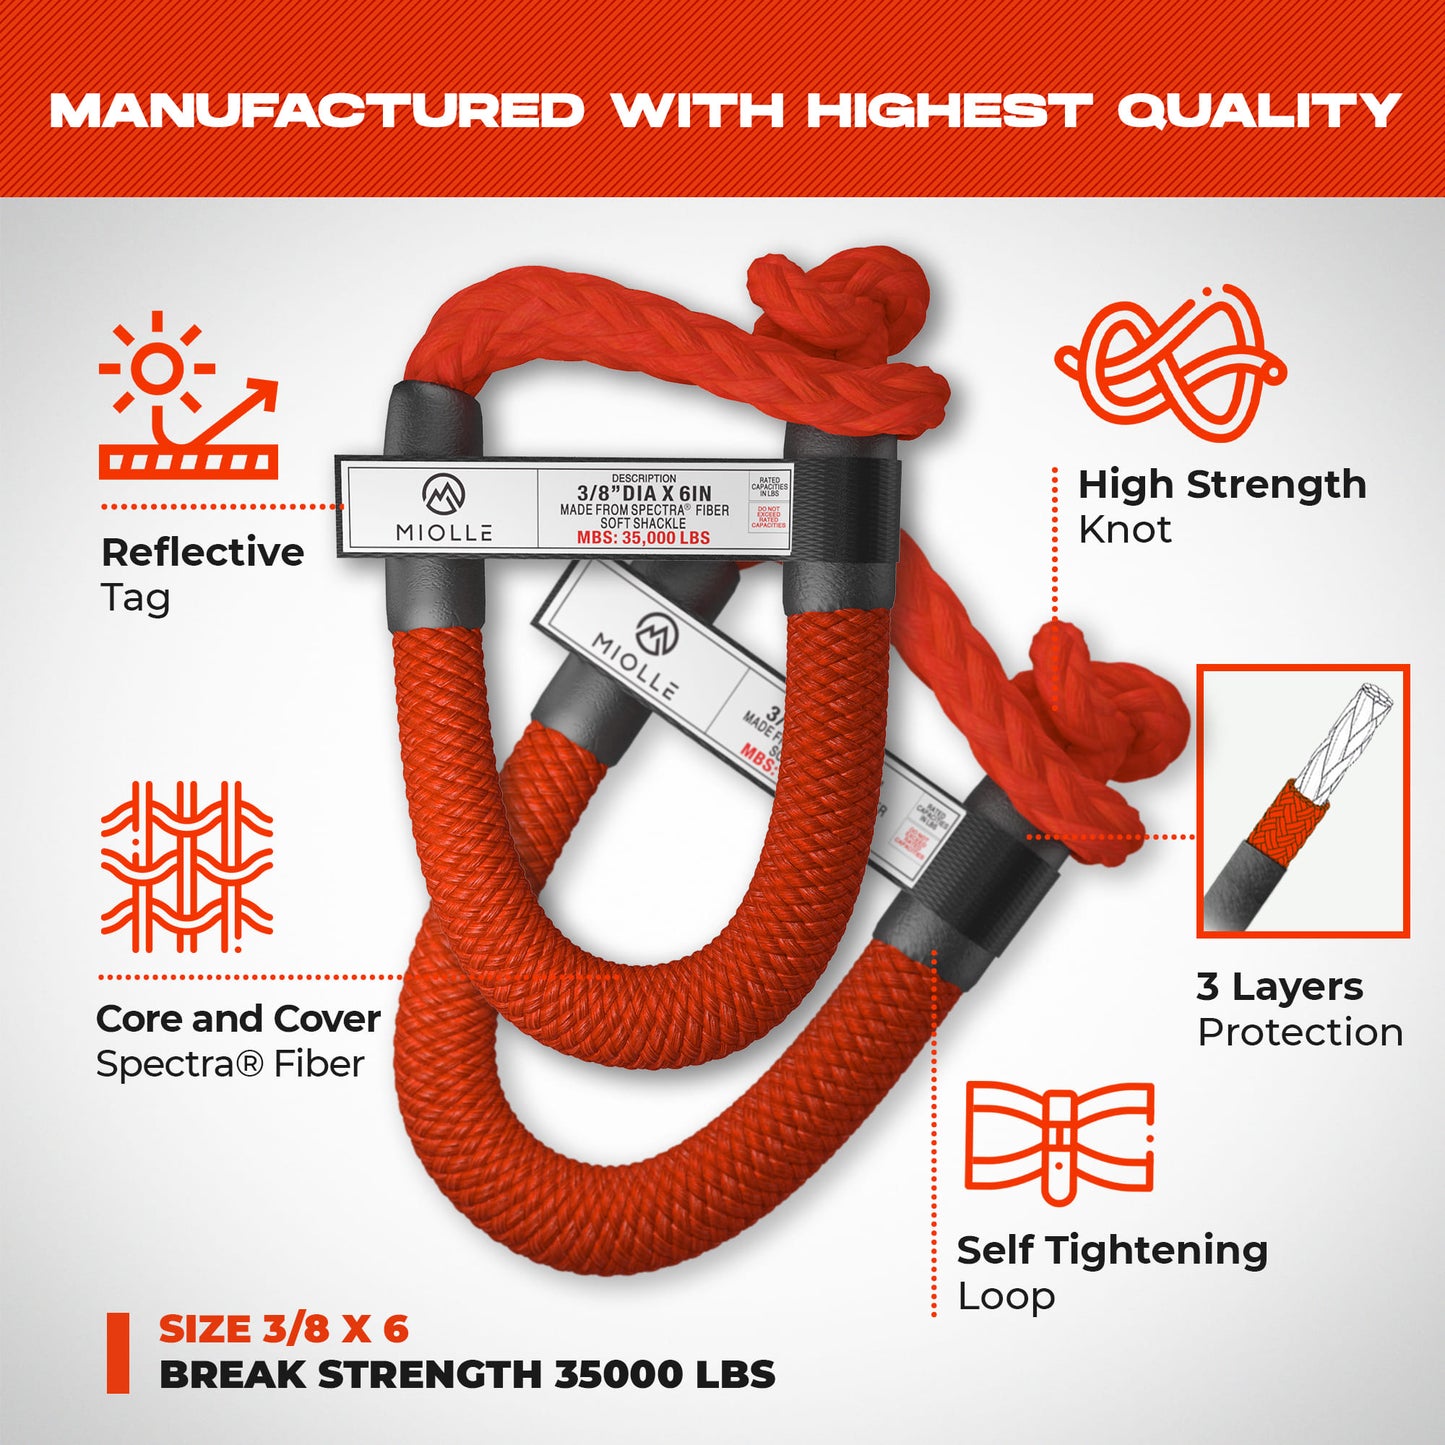 Cuerda de recuperación cinética - Miolle 7/8"x30' roja (29,300 lbs), con 2 grilletes blandos de fibra Spectra 3/8' x 6" (35000 lbs)